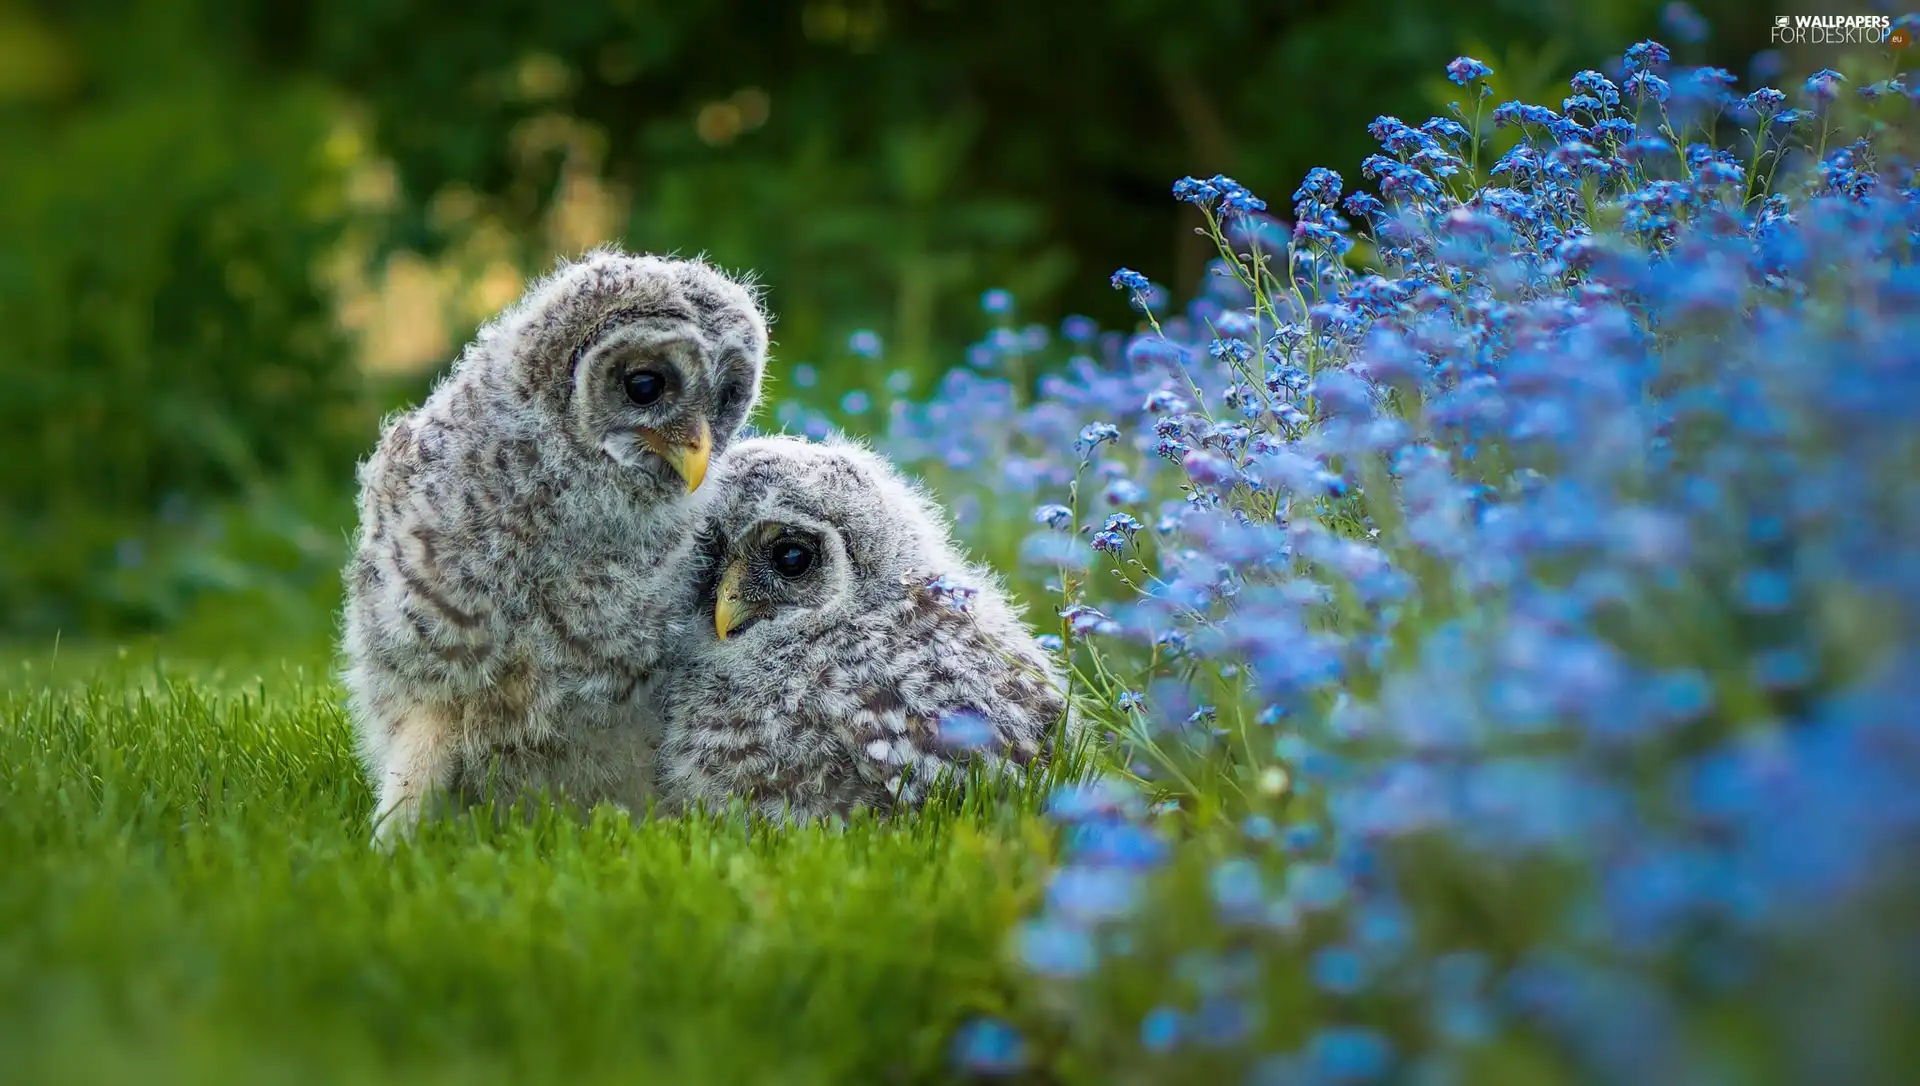 owls, birds, Flowers, grass, chick, Owls